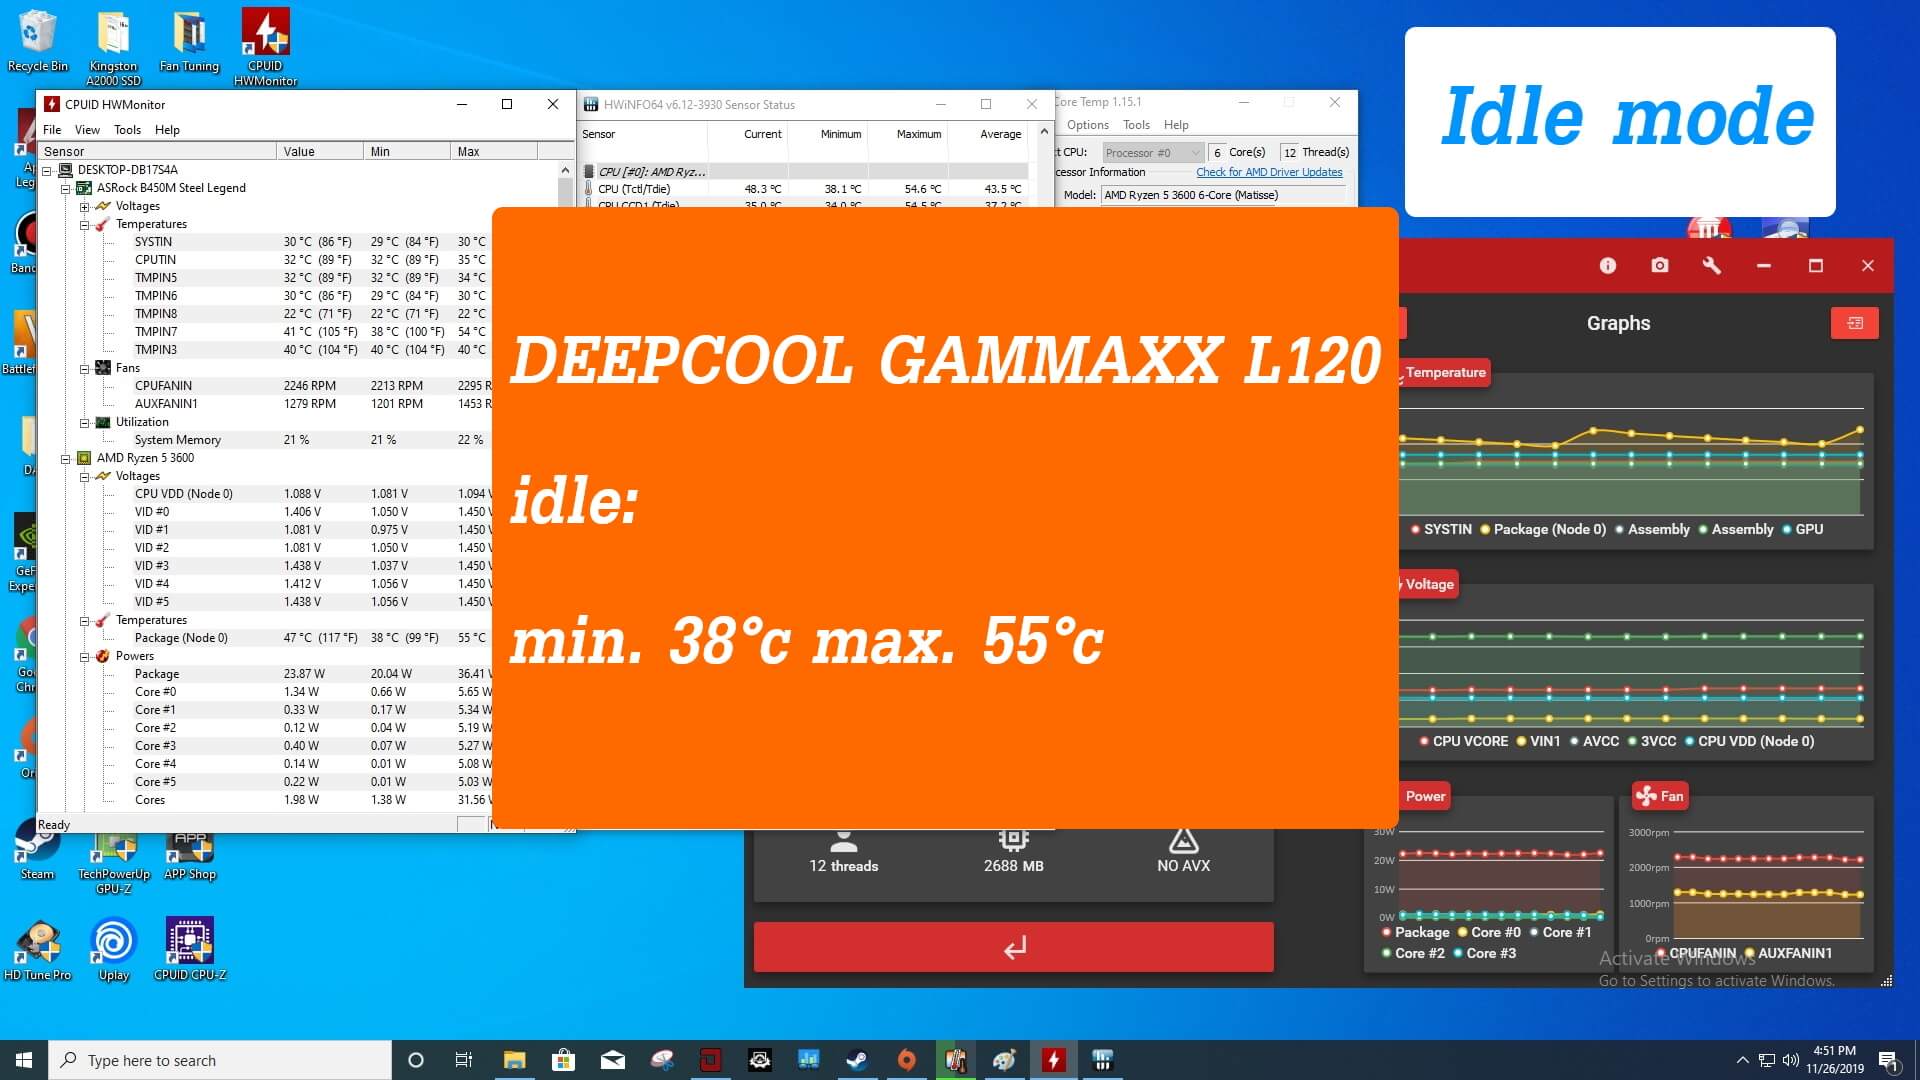 DEEPCOOL GAMMAXX L120v2 Idle